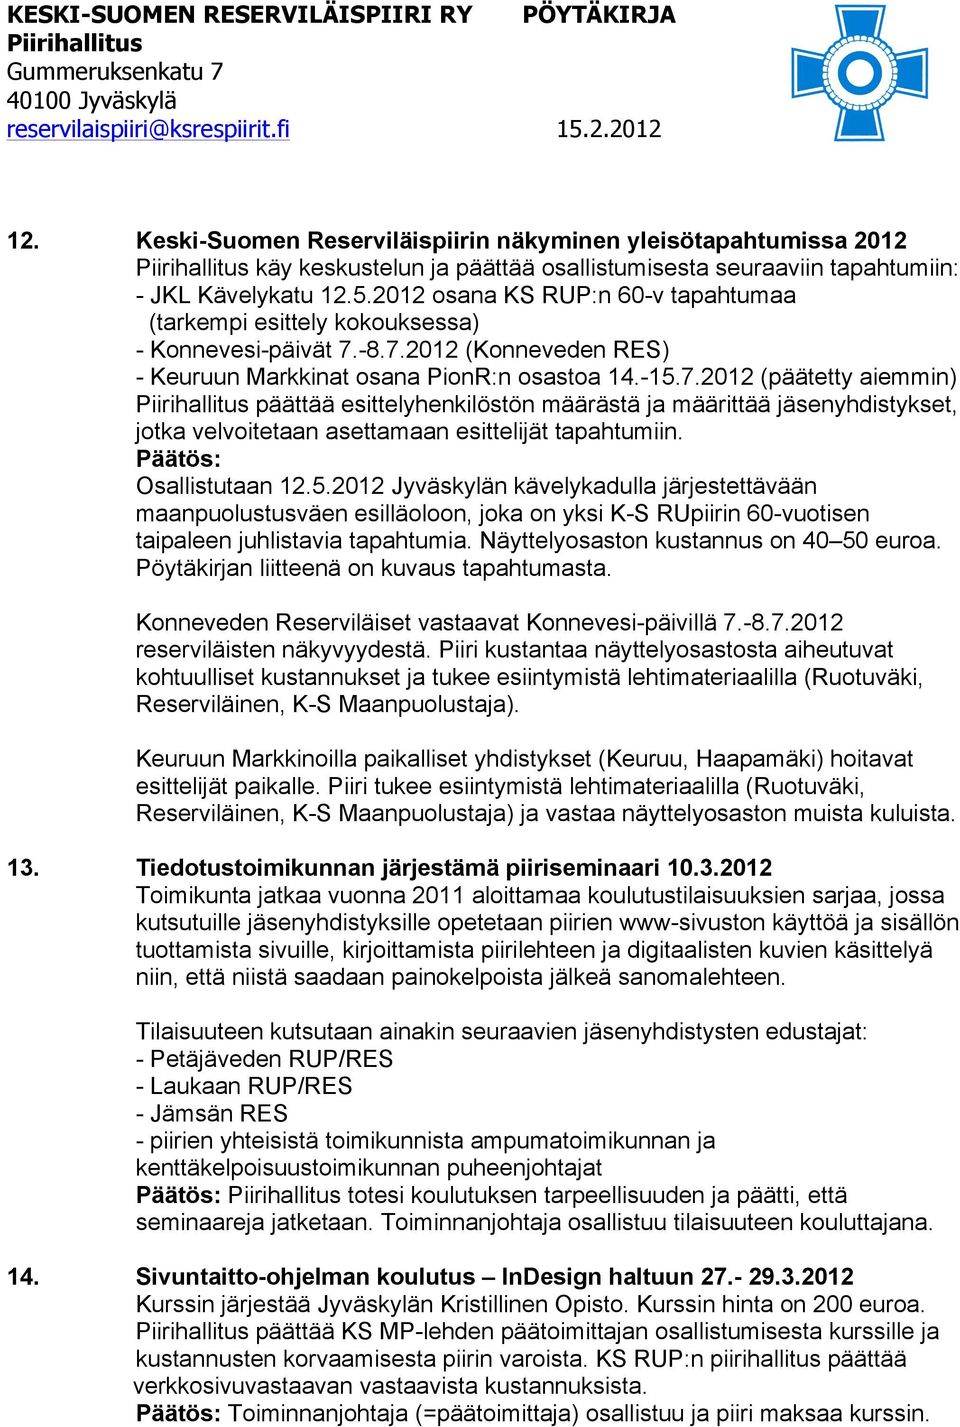 -8.7.2012 (Konneveden RES) - Keuruun Markkinat osana PionR:n osastoa 14.-15.7.2012 (päätetty aiemmin) päättää esittelyhenkilöstön määrästä ja määrittää jäsenyhdistykset, jotka velvoitetaan asettamaan esittelijät tapahtumiin.